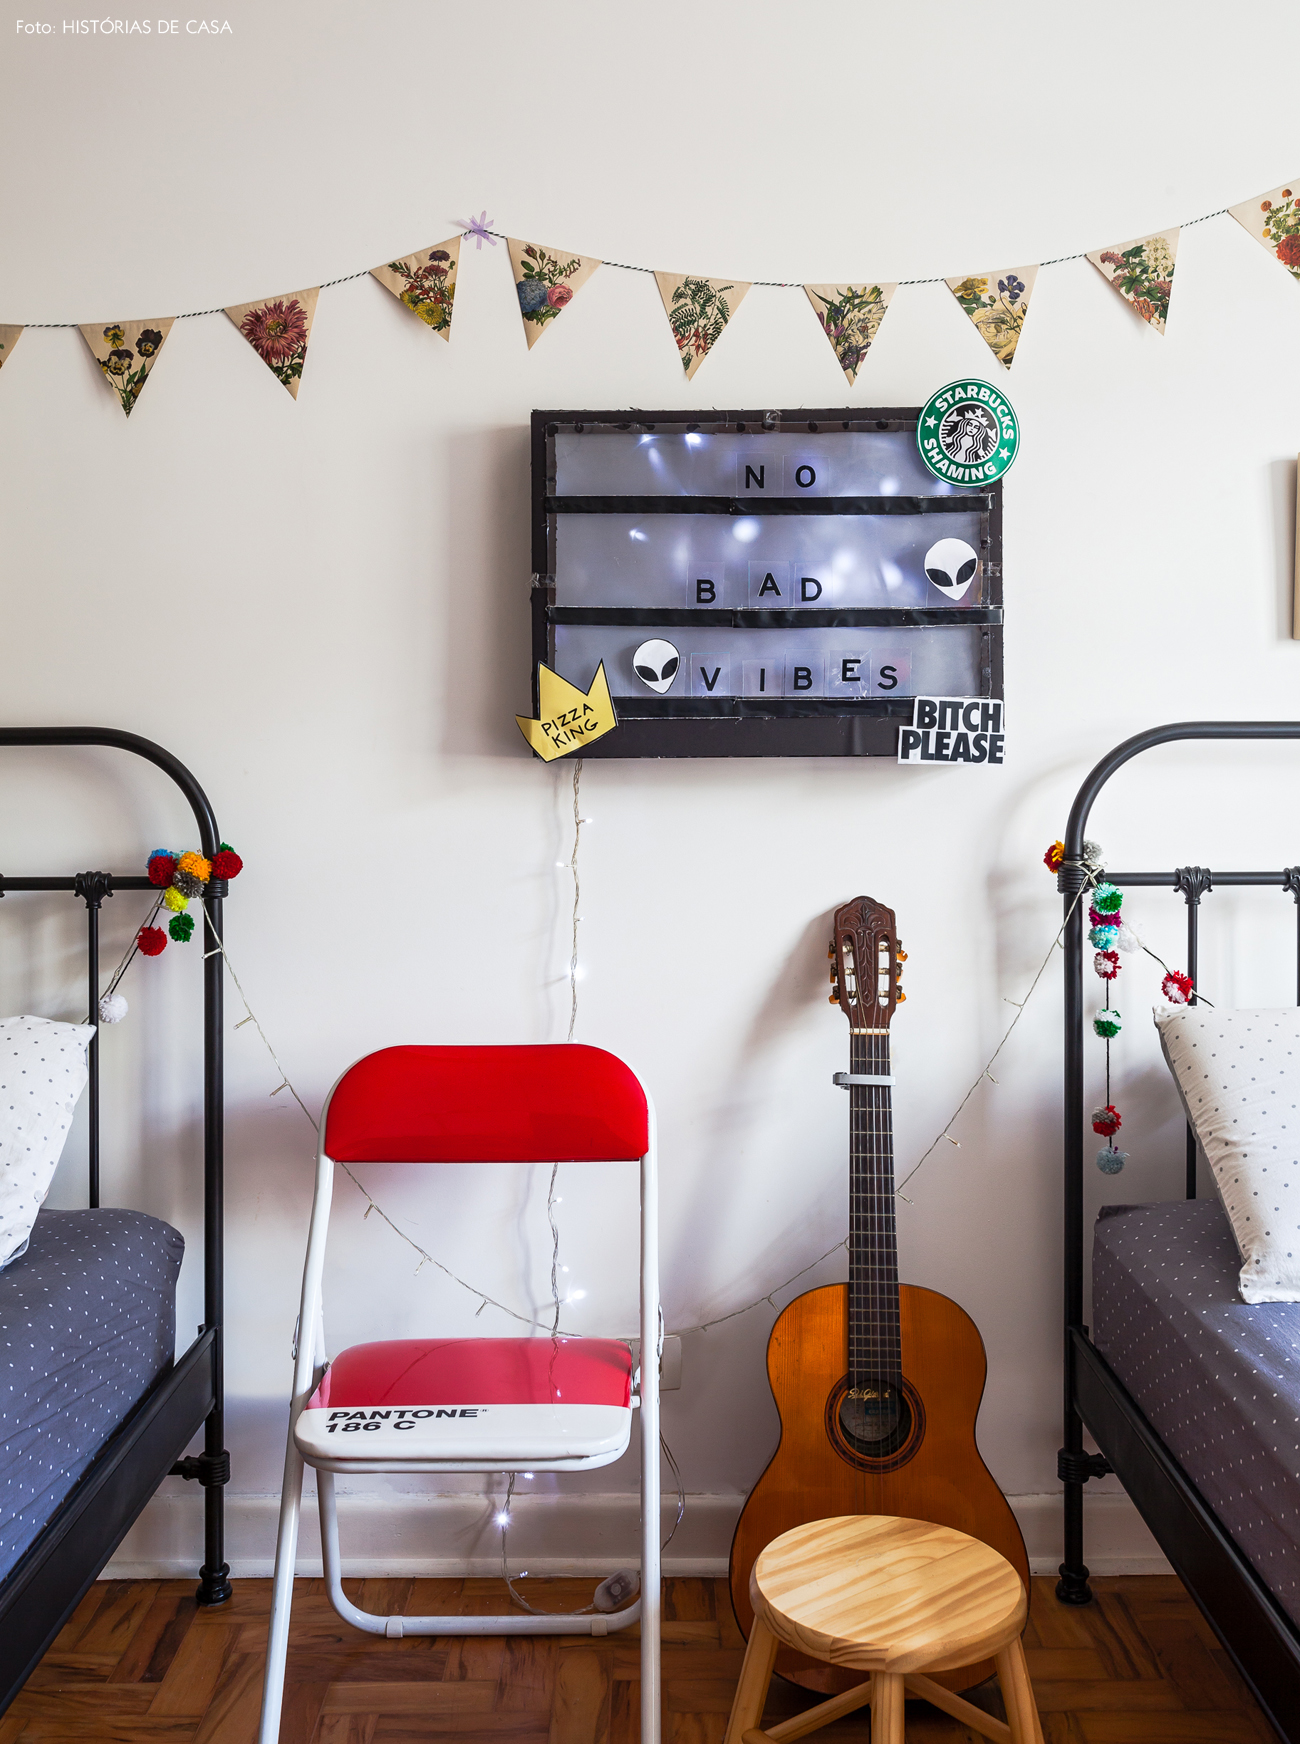 44-decoracao-quarto-crianca-camas-de-ferro-bandeirolas